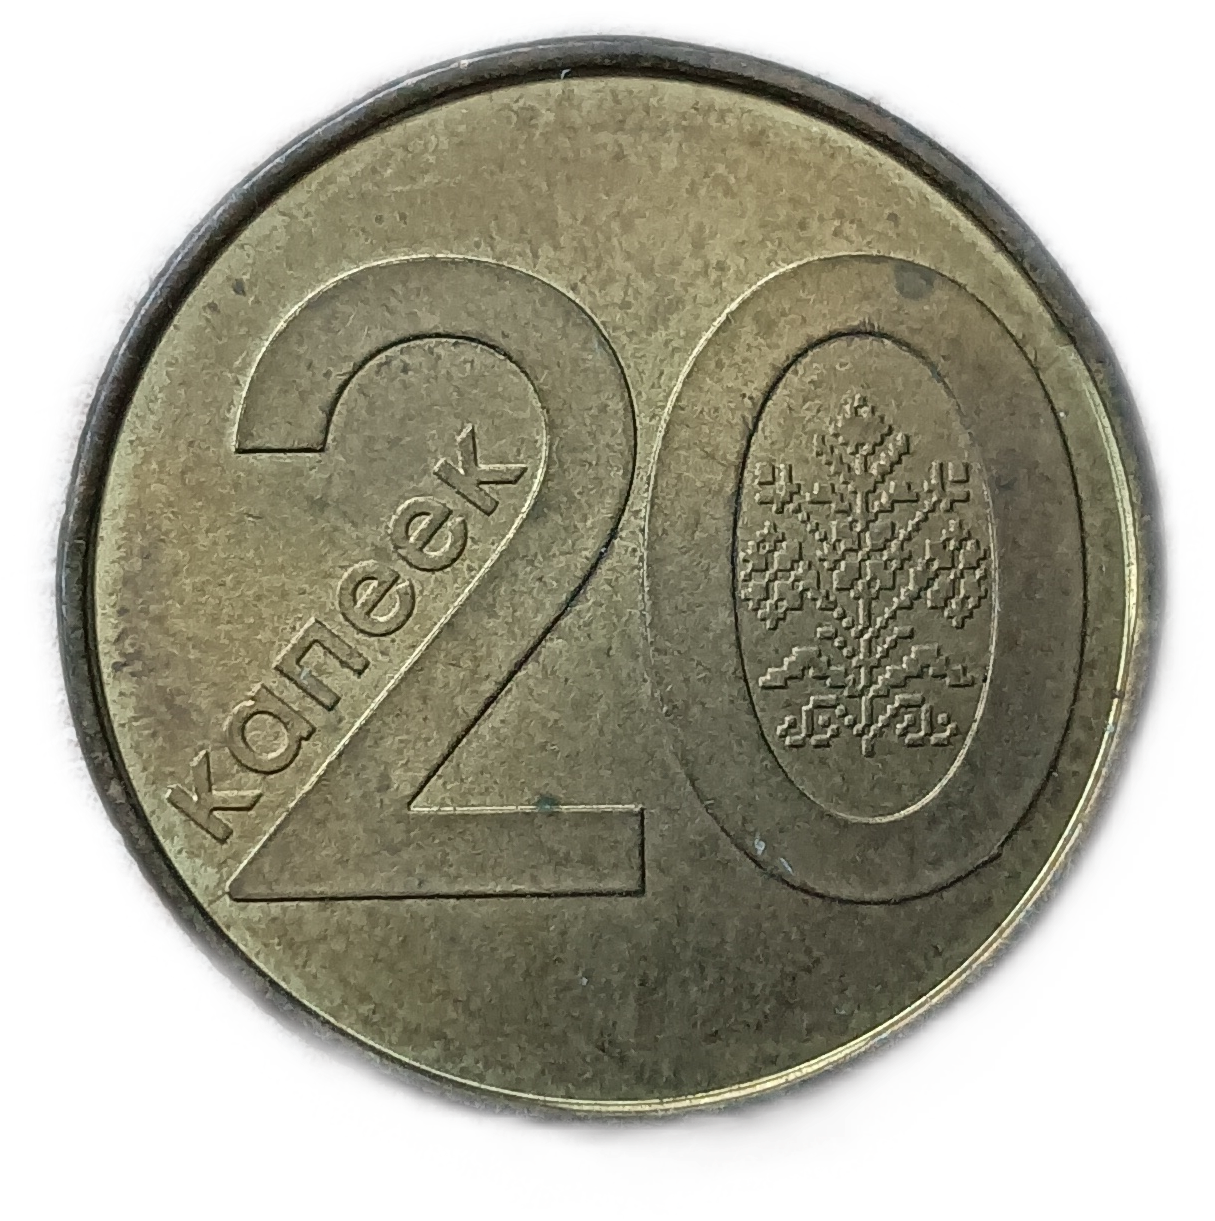 10 белорусских копеек. 20 Белорусских копеек 2009 года. Белорусские монеты. Монеты Белоруссия 5 копеек 2009. Беларусь монета жыцце.